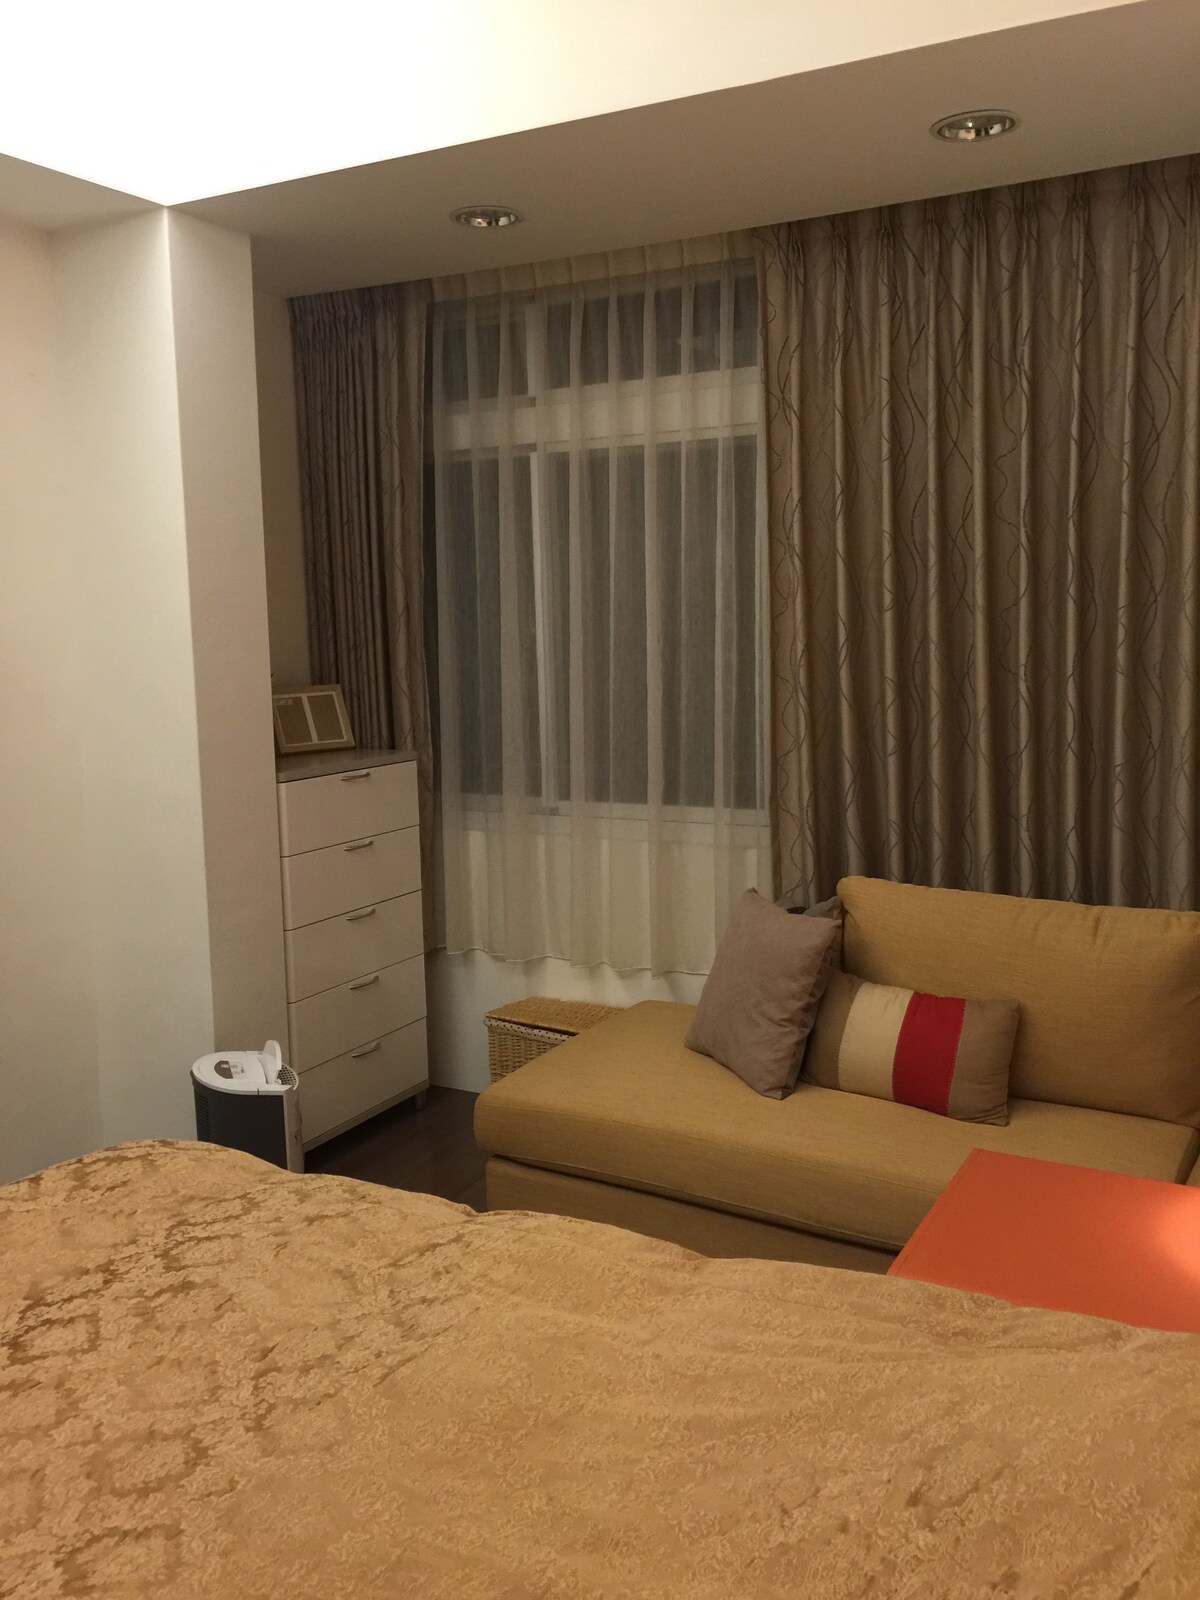 台北市信義區安靜採光好 公寓,獨立房間一大床,乾淨房間,設備齊全交通便利